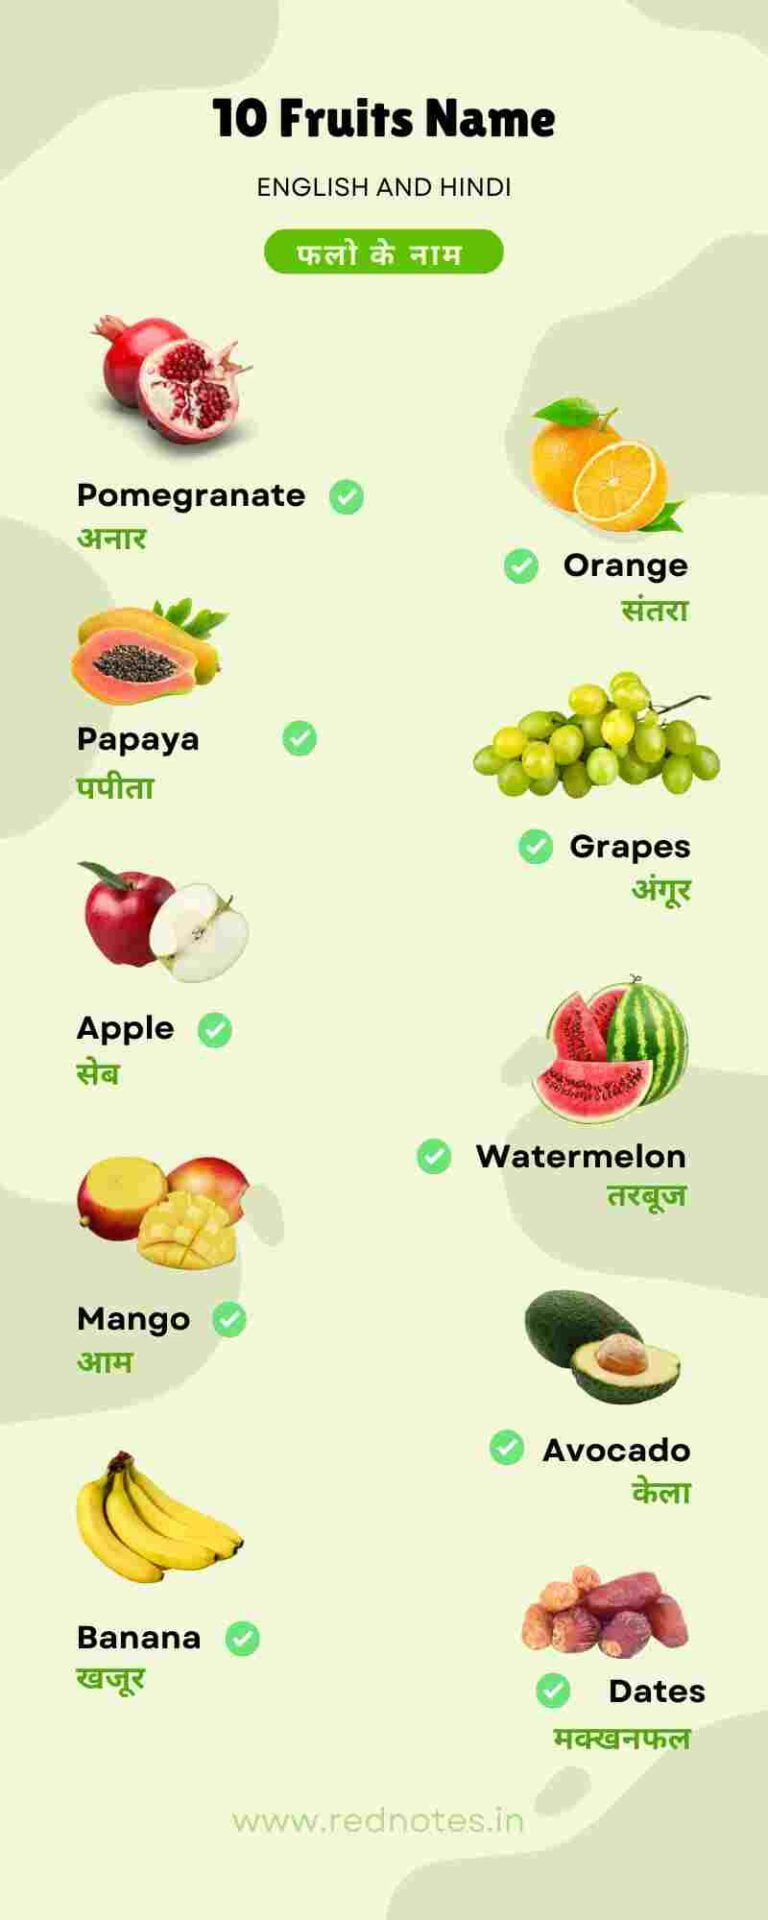 10 Fruits Name – 10 Fruits Name in Hindi and English | 10 फलों के नाम